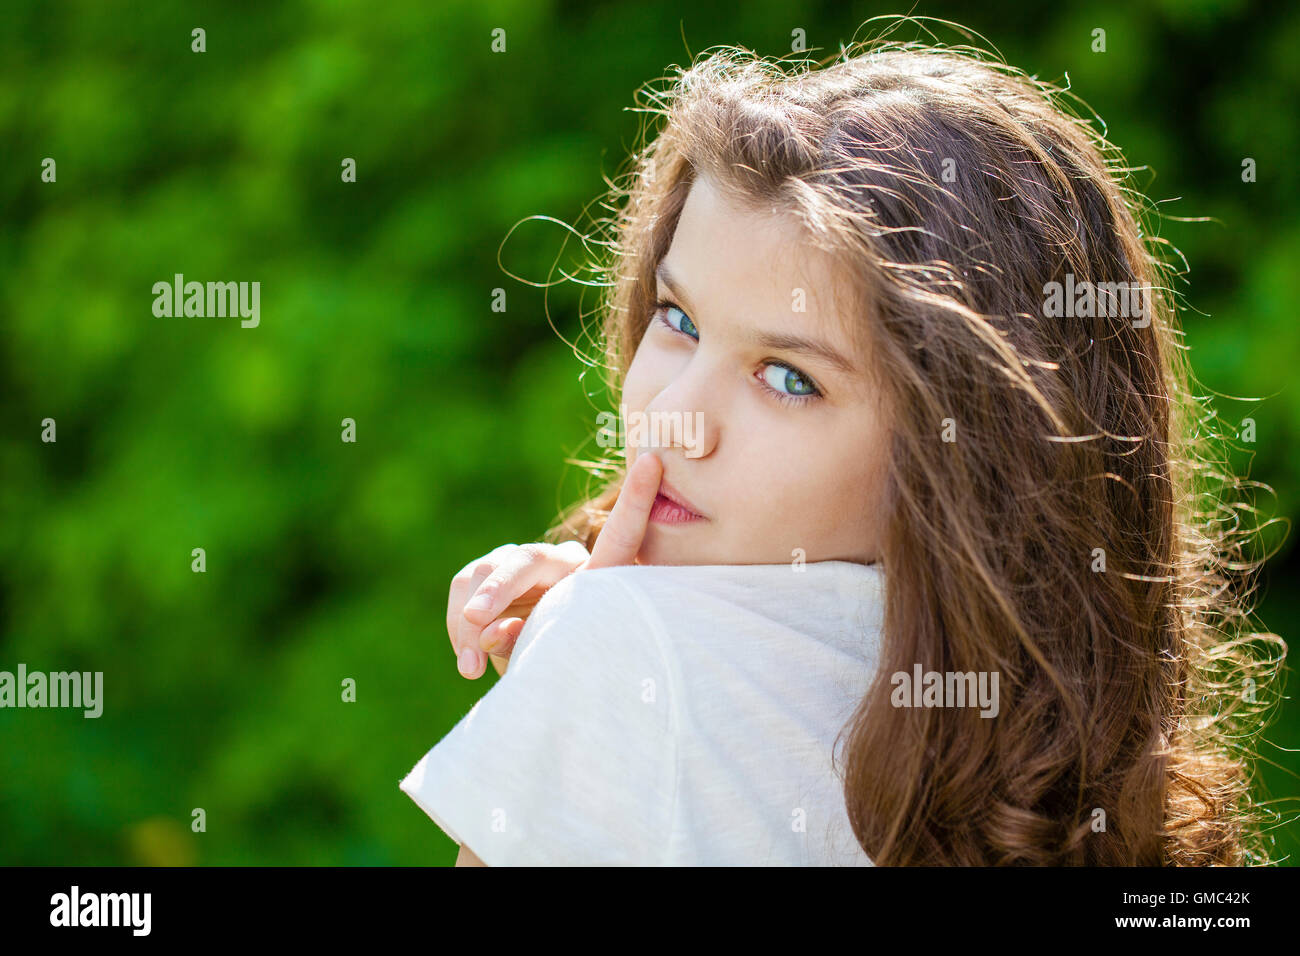 Junge schöne Mädchen hat für Lippen als Zeichen der Stille, im freien Sommer Zeigefinger gelegt. Stockfoto